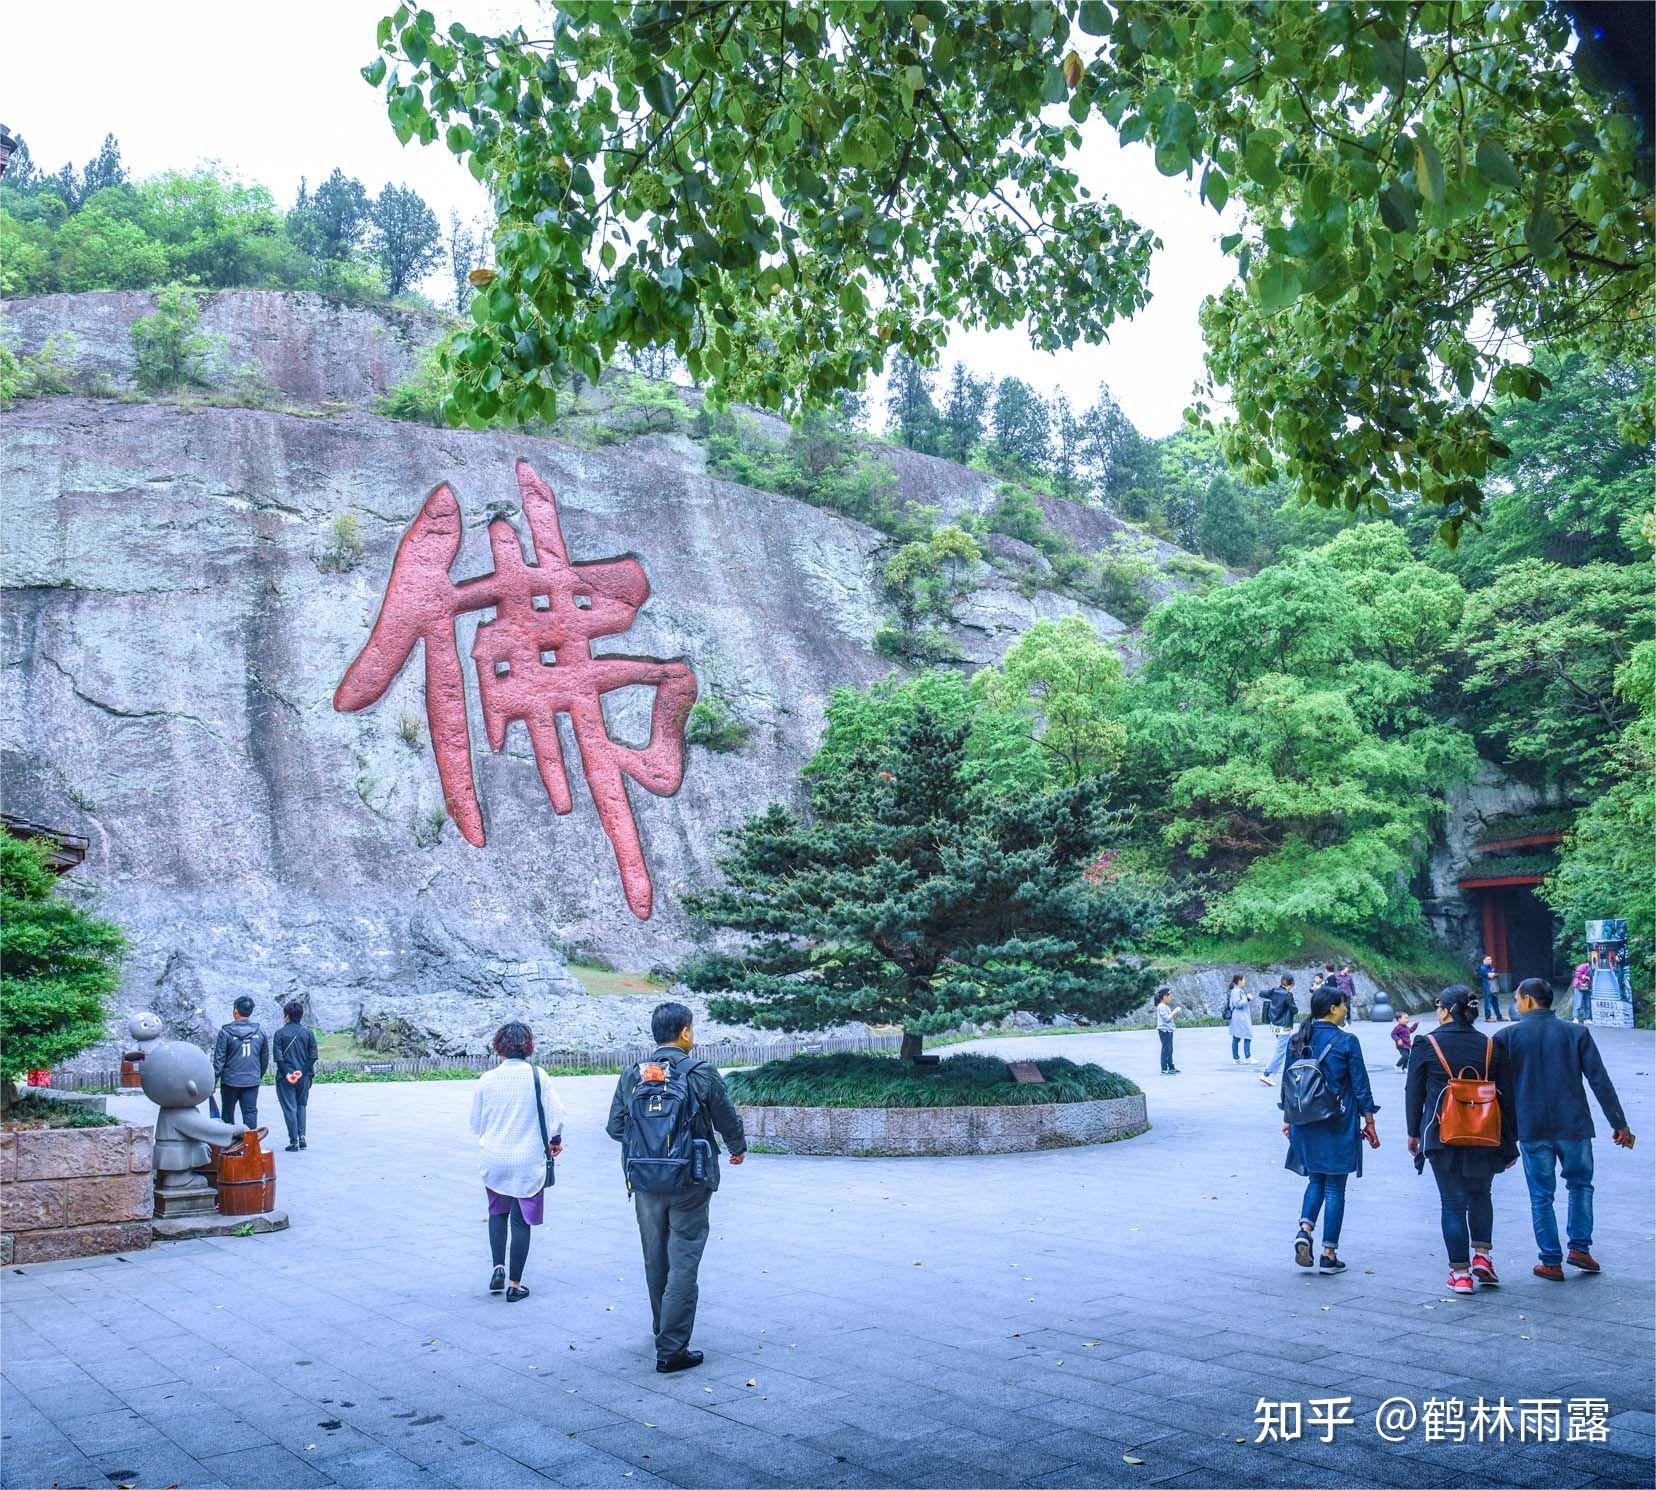 大佛寺,位于浙江省新昌县城南明街道,始建于东晋.